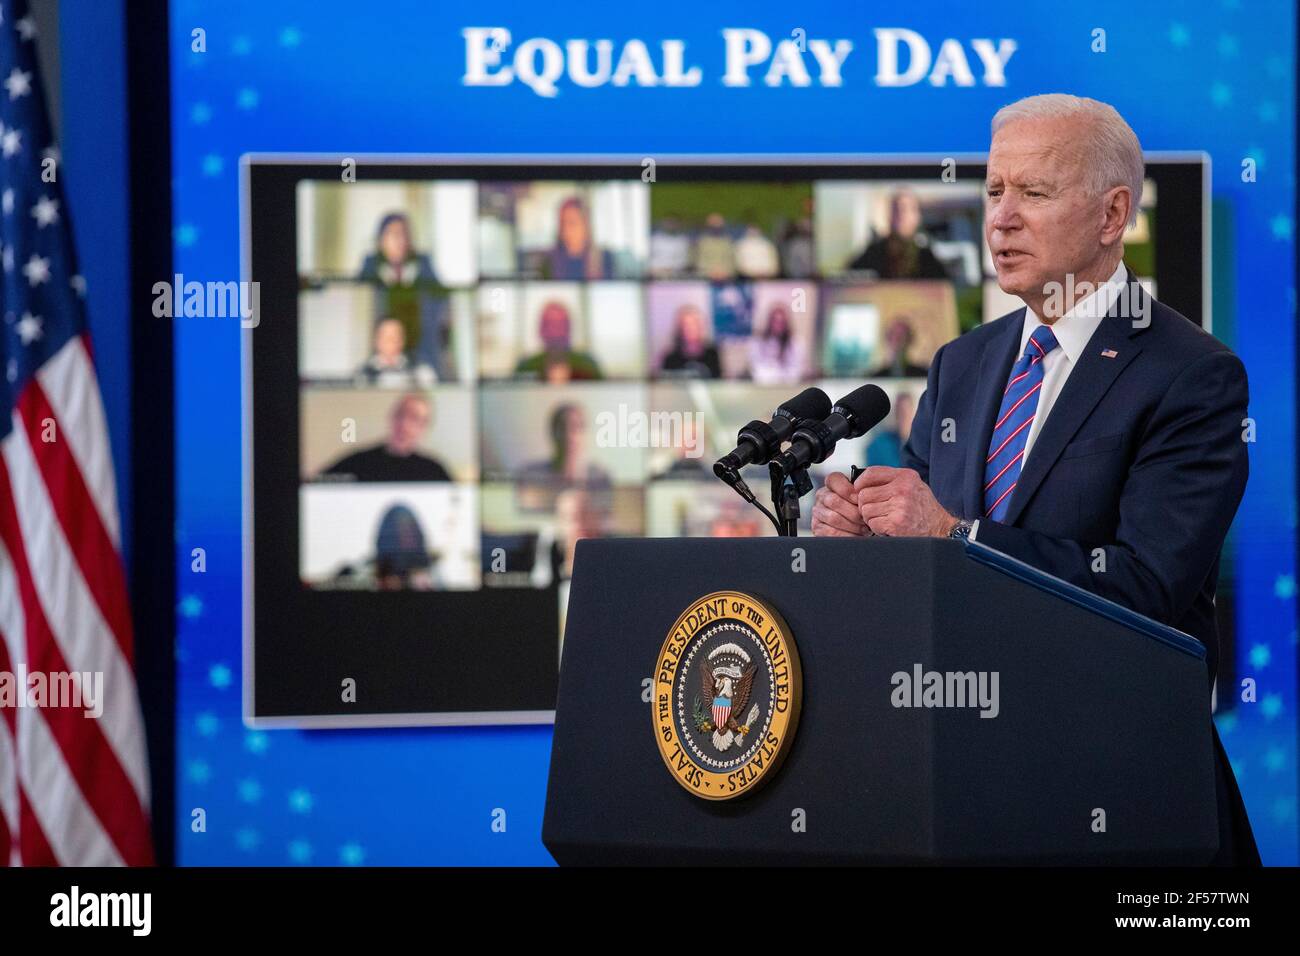 LE président AMÉRICAIN Joe Biden prononce un discours lors d'un événement marquant la Journée de l'égalité des rémunérations dans la salle à manger de l'État de la Maison Blanche à Washington, DC, USA, le 24 mars 2021. Le jour de salaire égal marque le temps supplémentaire qu'une femme moyenne aux États-Unis a pris pour gagner le même salaire que ses homologues masculins l'année civile précédente. Banque D'Images